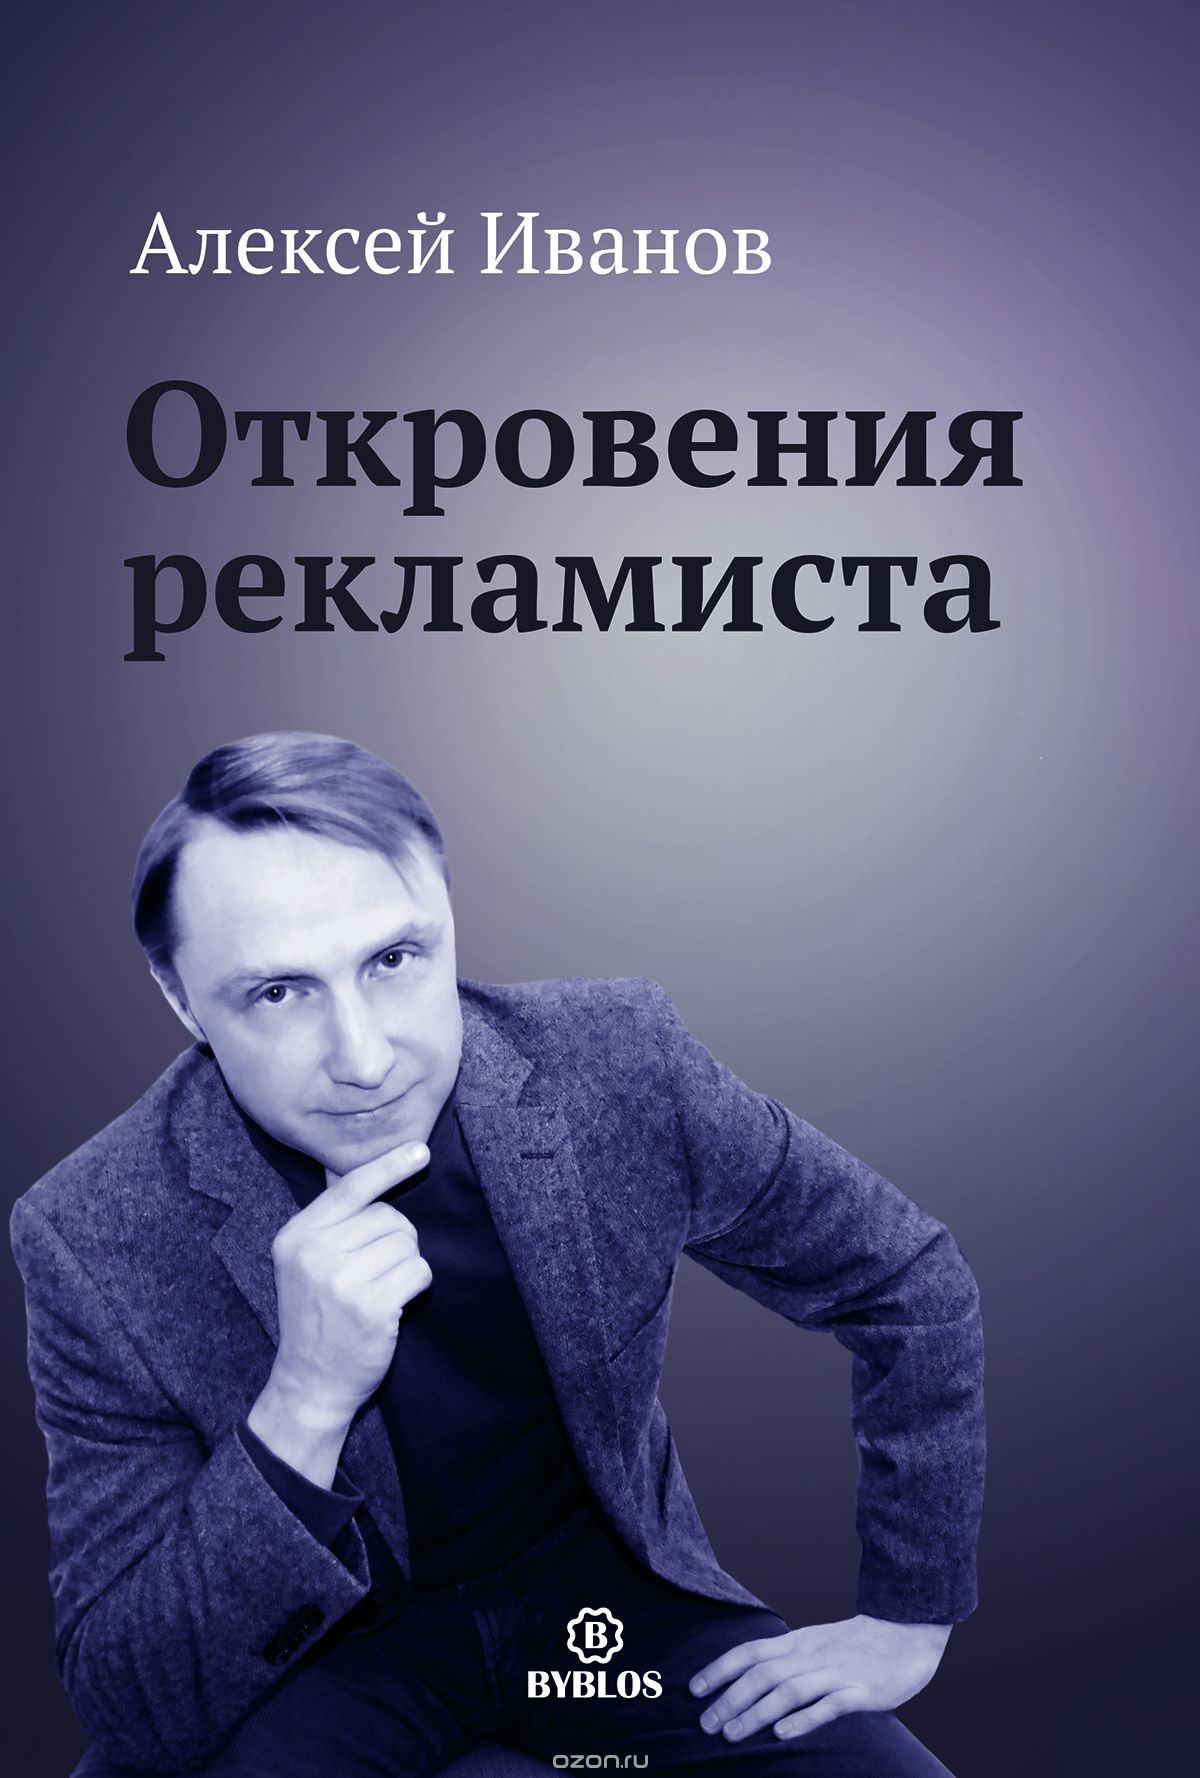 Скачать книгу "Откровения рекламиста, Алексей Иванов"